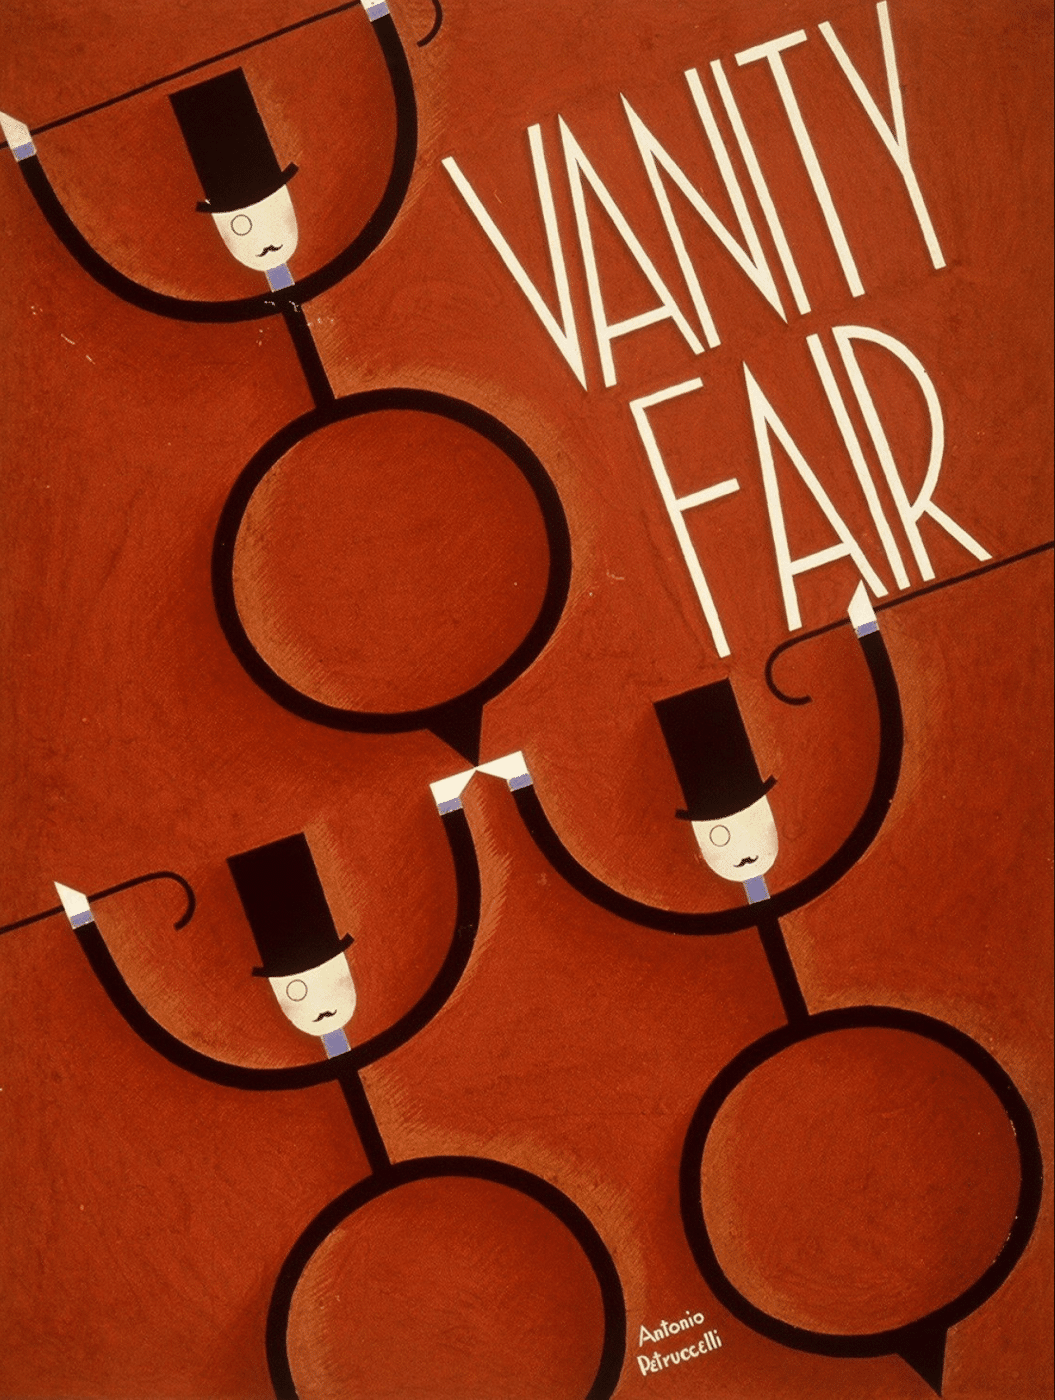 Antonio Petruccelli, Vanity Fair, 1930s